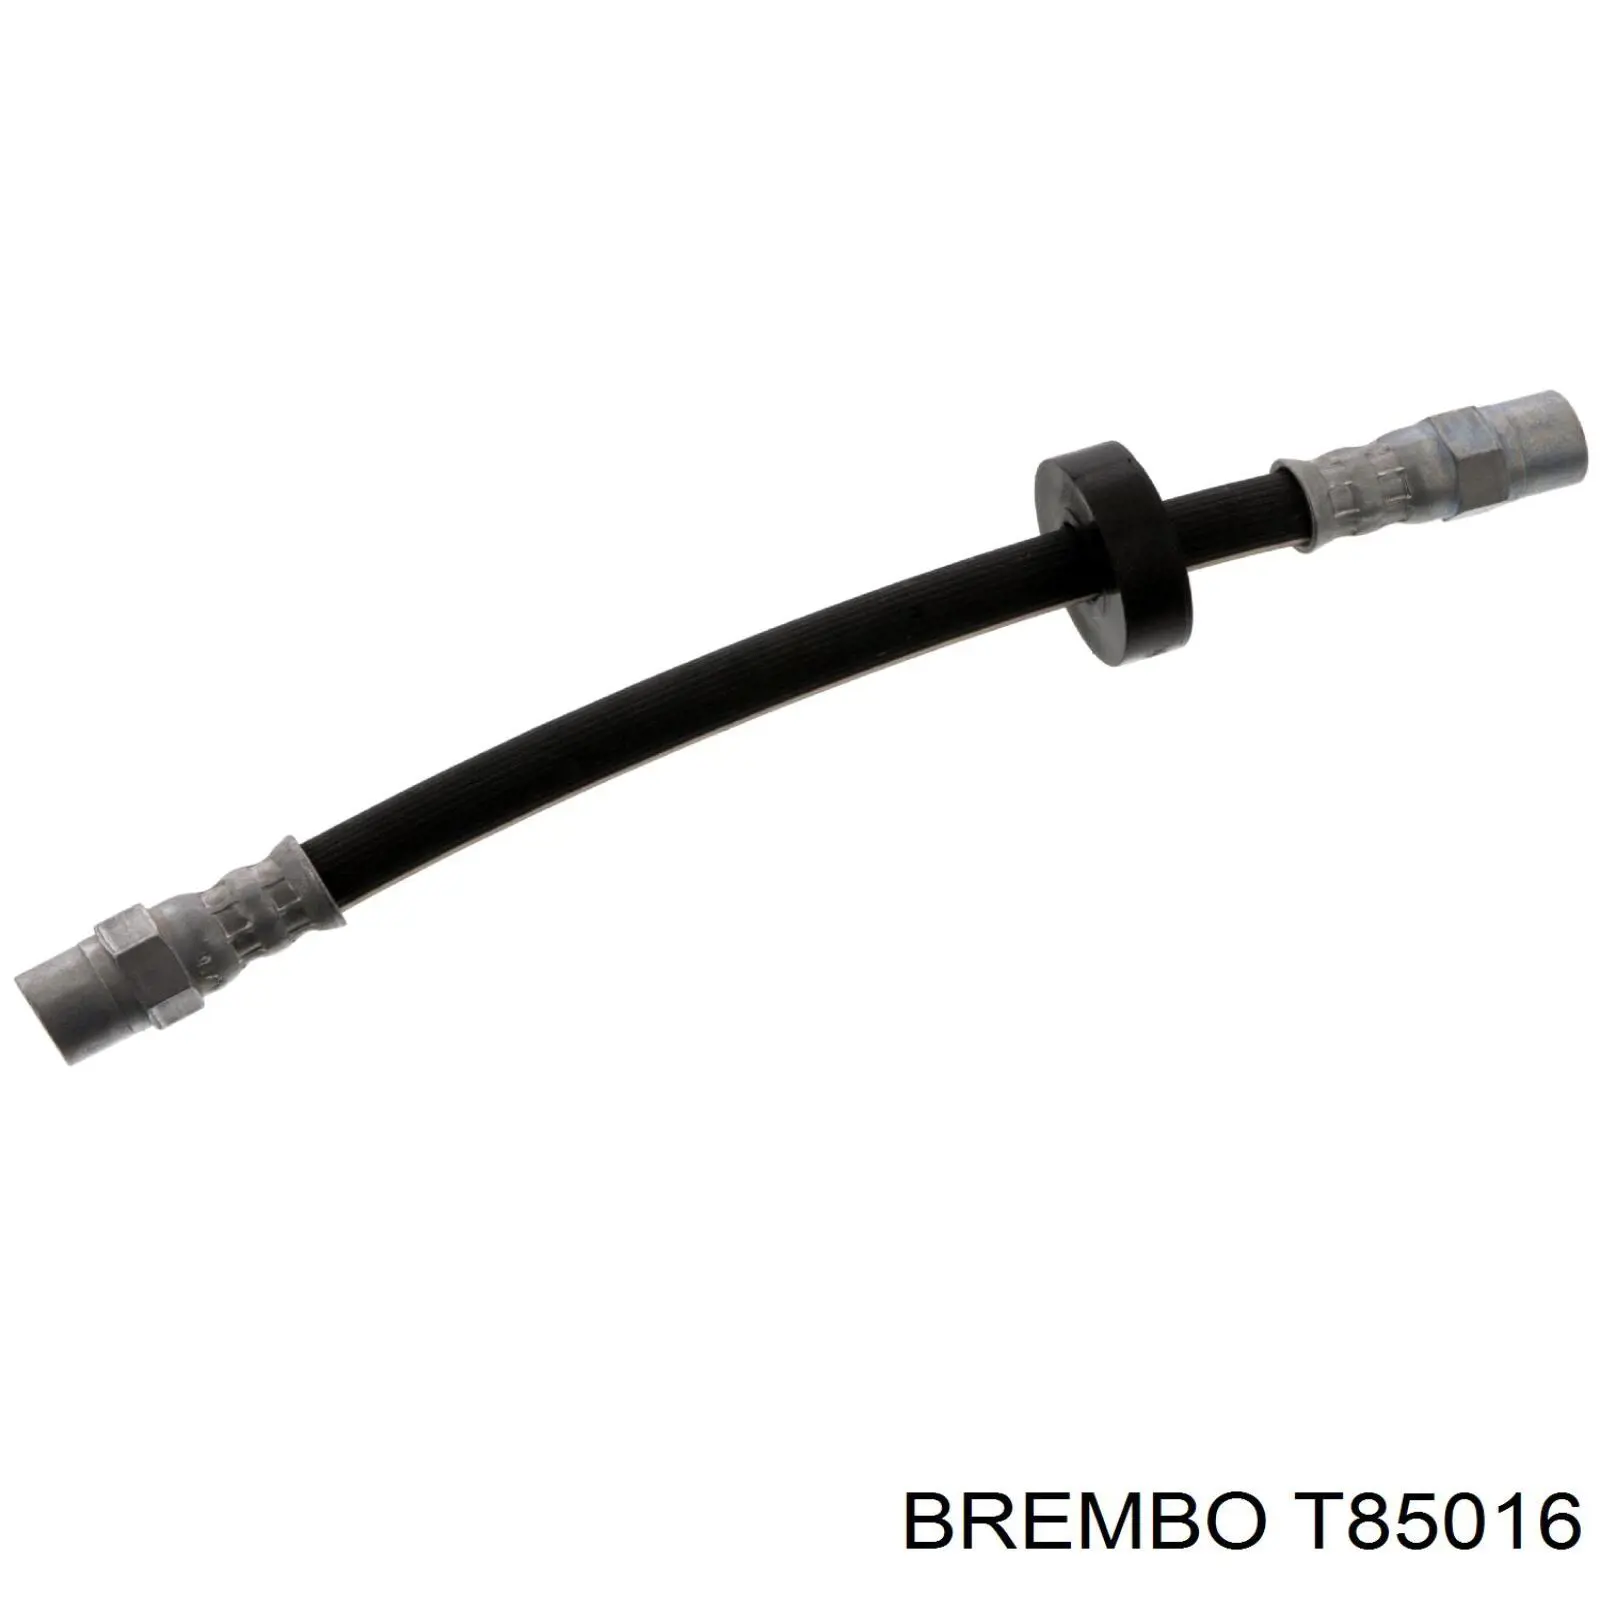 T85016 Brembo latiguillo de freno trasero